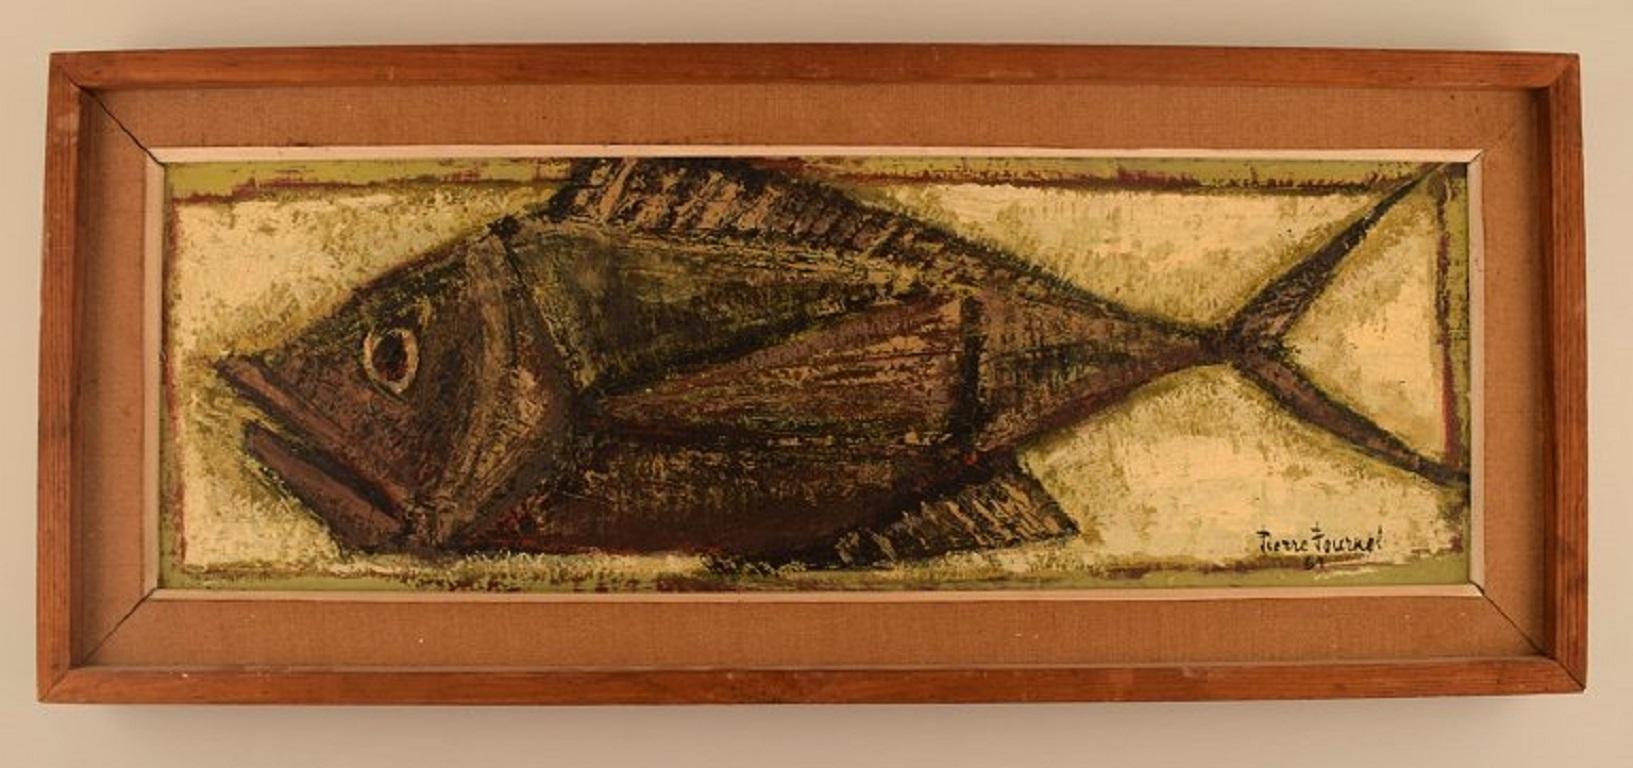 Pierre Fournel (né en 1924), France. 
Huile sur planche. Le poisson. 
Daté de 1961.
La planche mesure : 59 x 19 cm.
Le cadre mesure : 5 cm.
En parfait état.
Signé et daté.